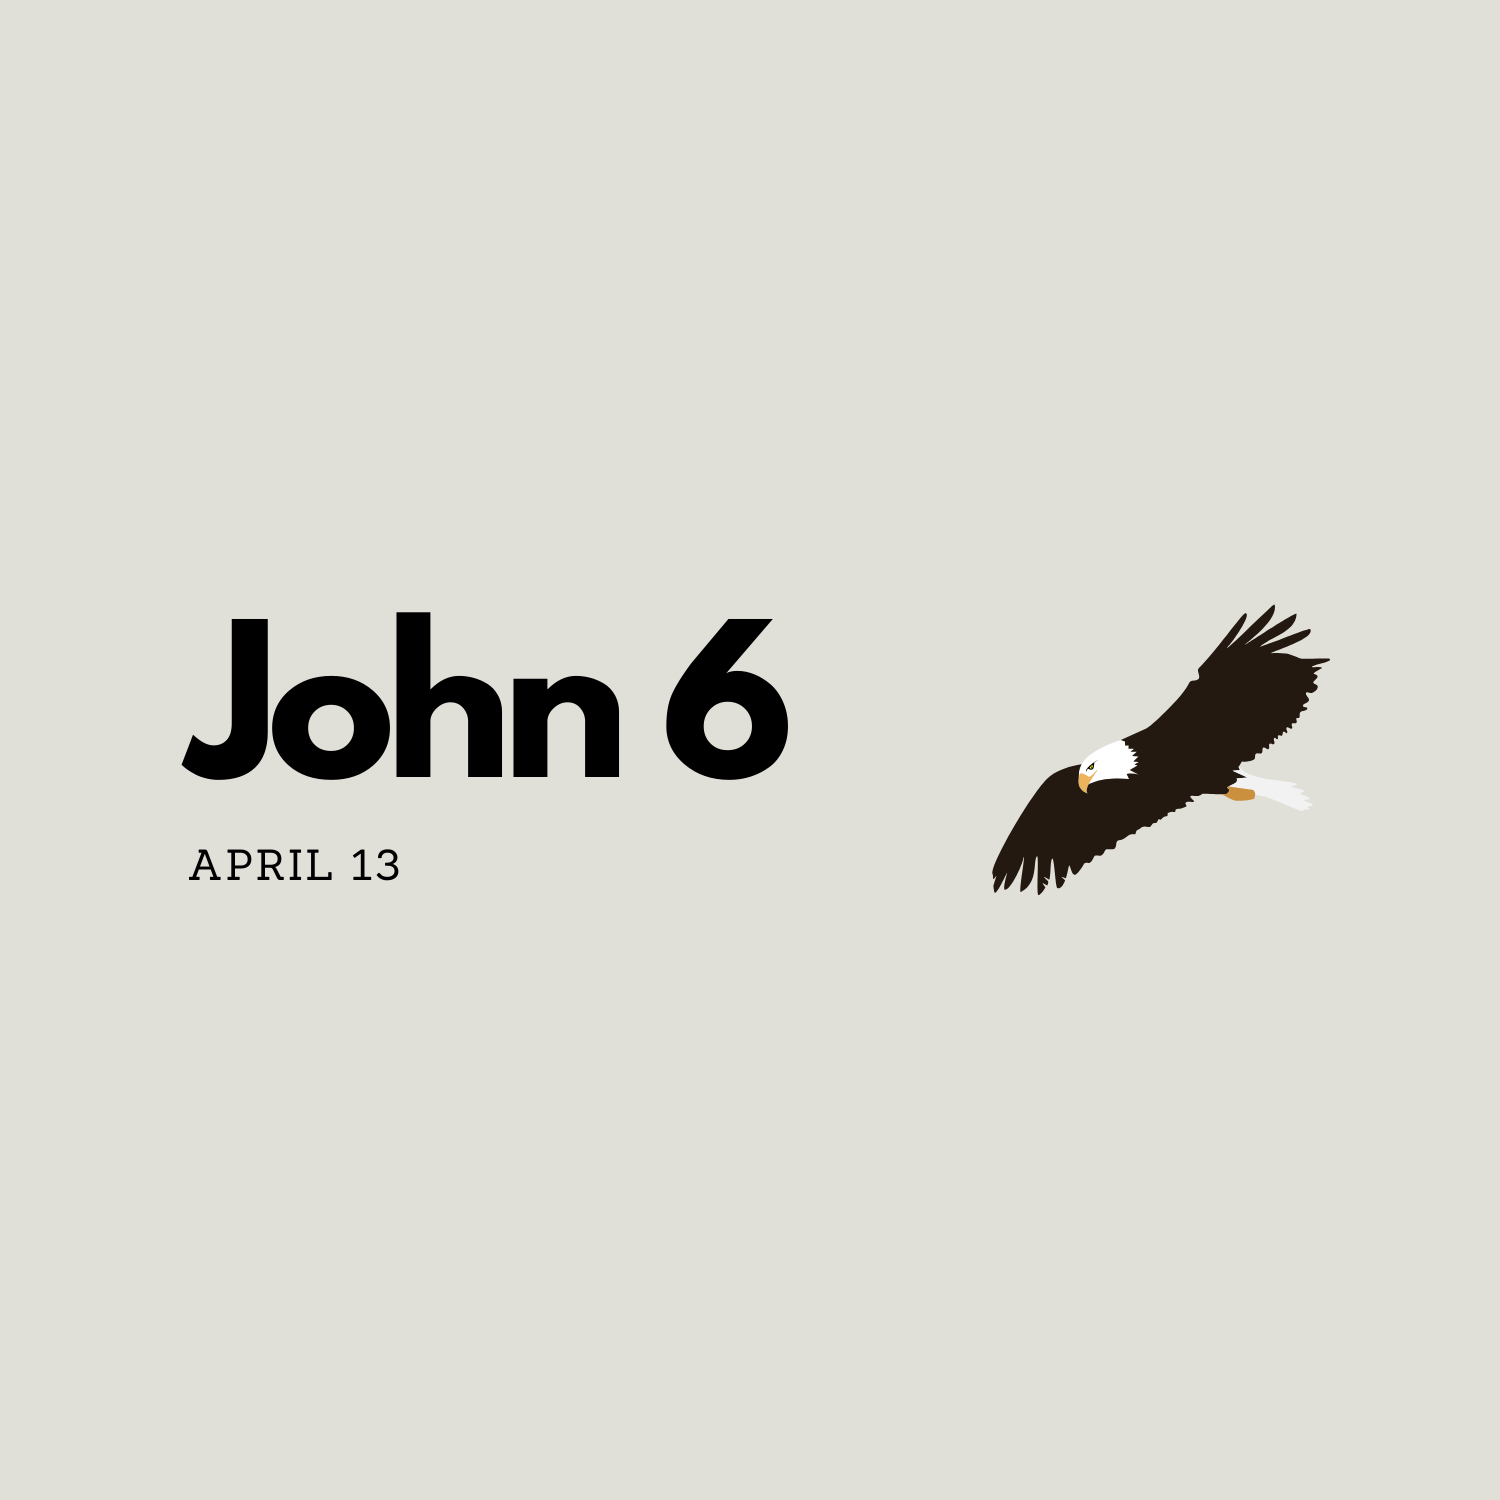 April 13: John 6